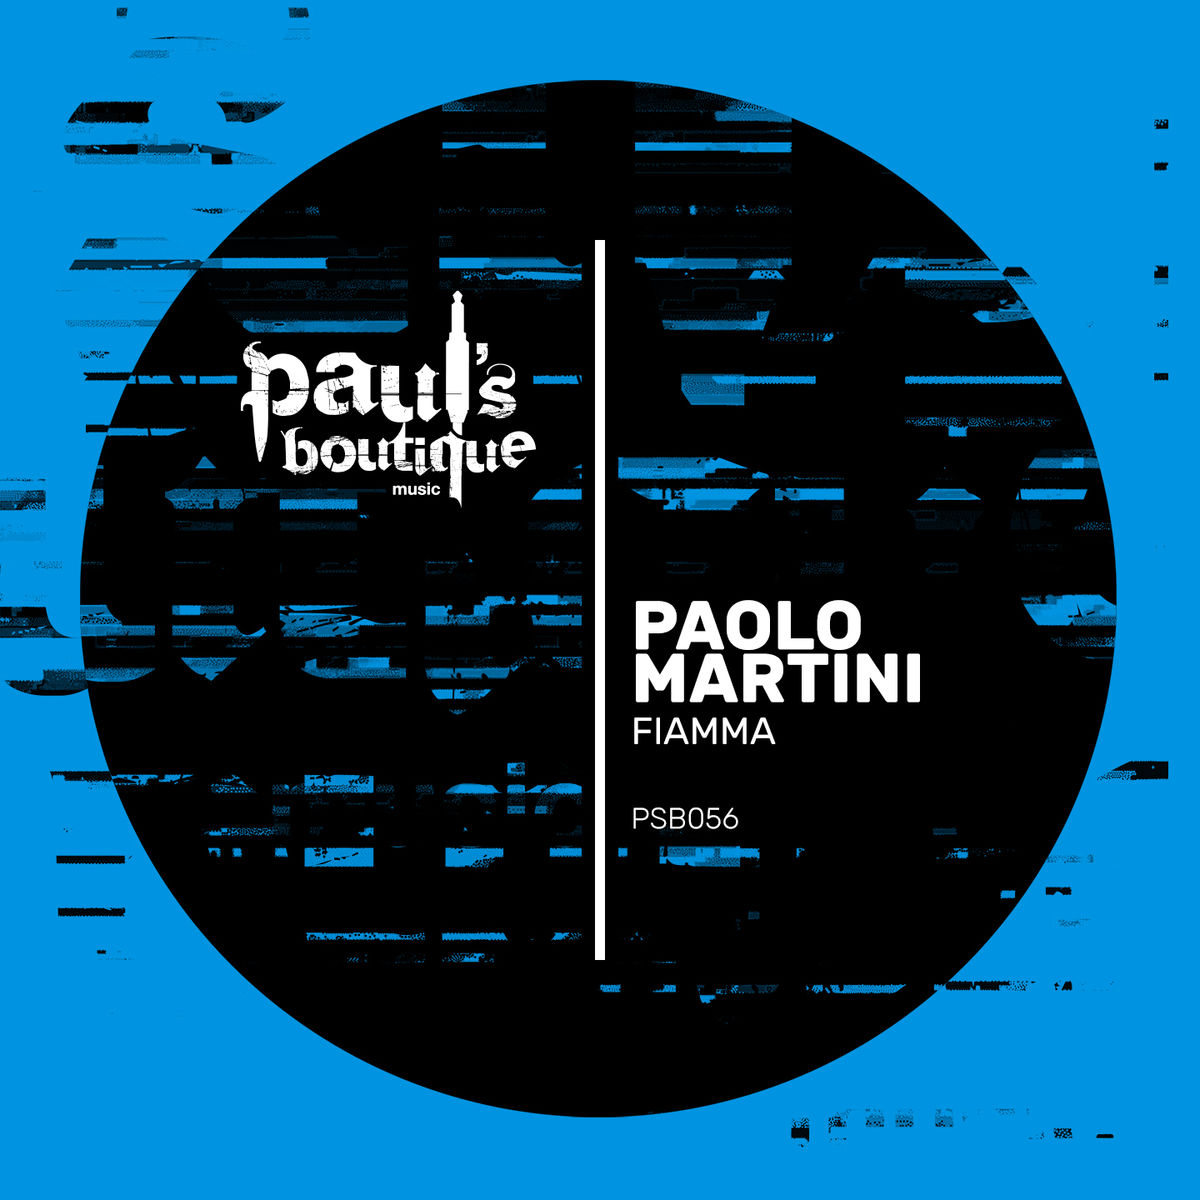 Paolo Martini - Fiamma / Paul's Boutique